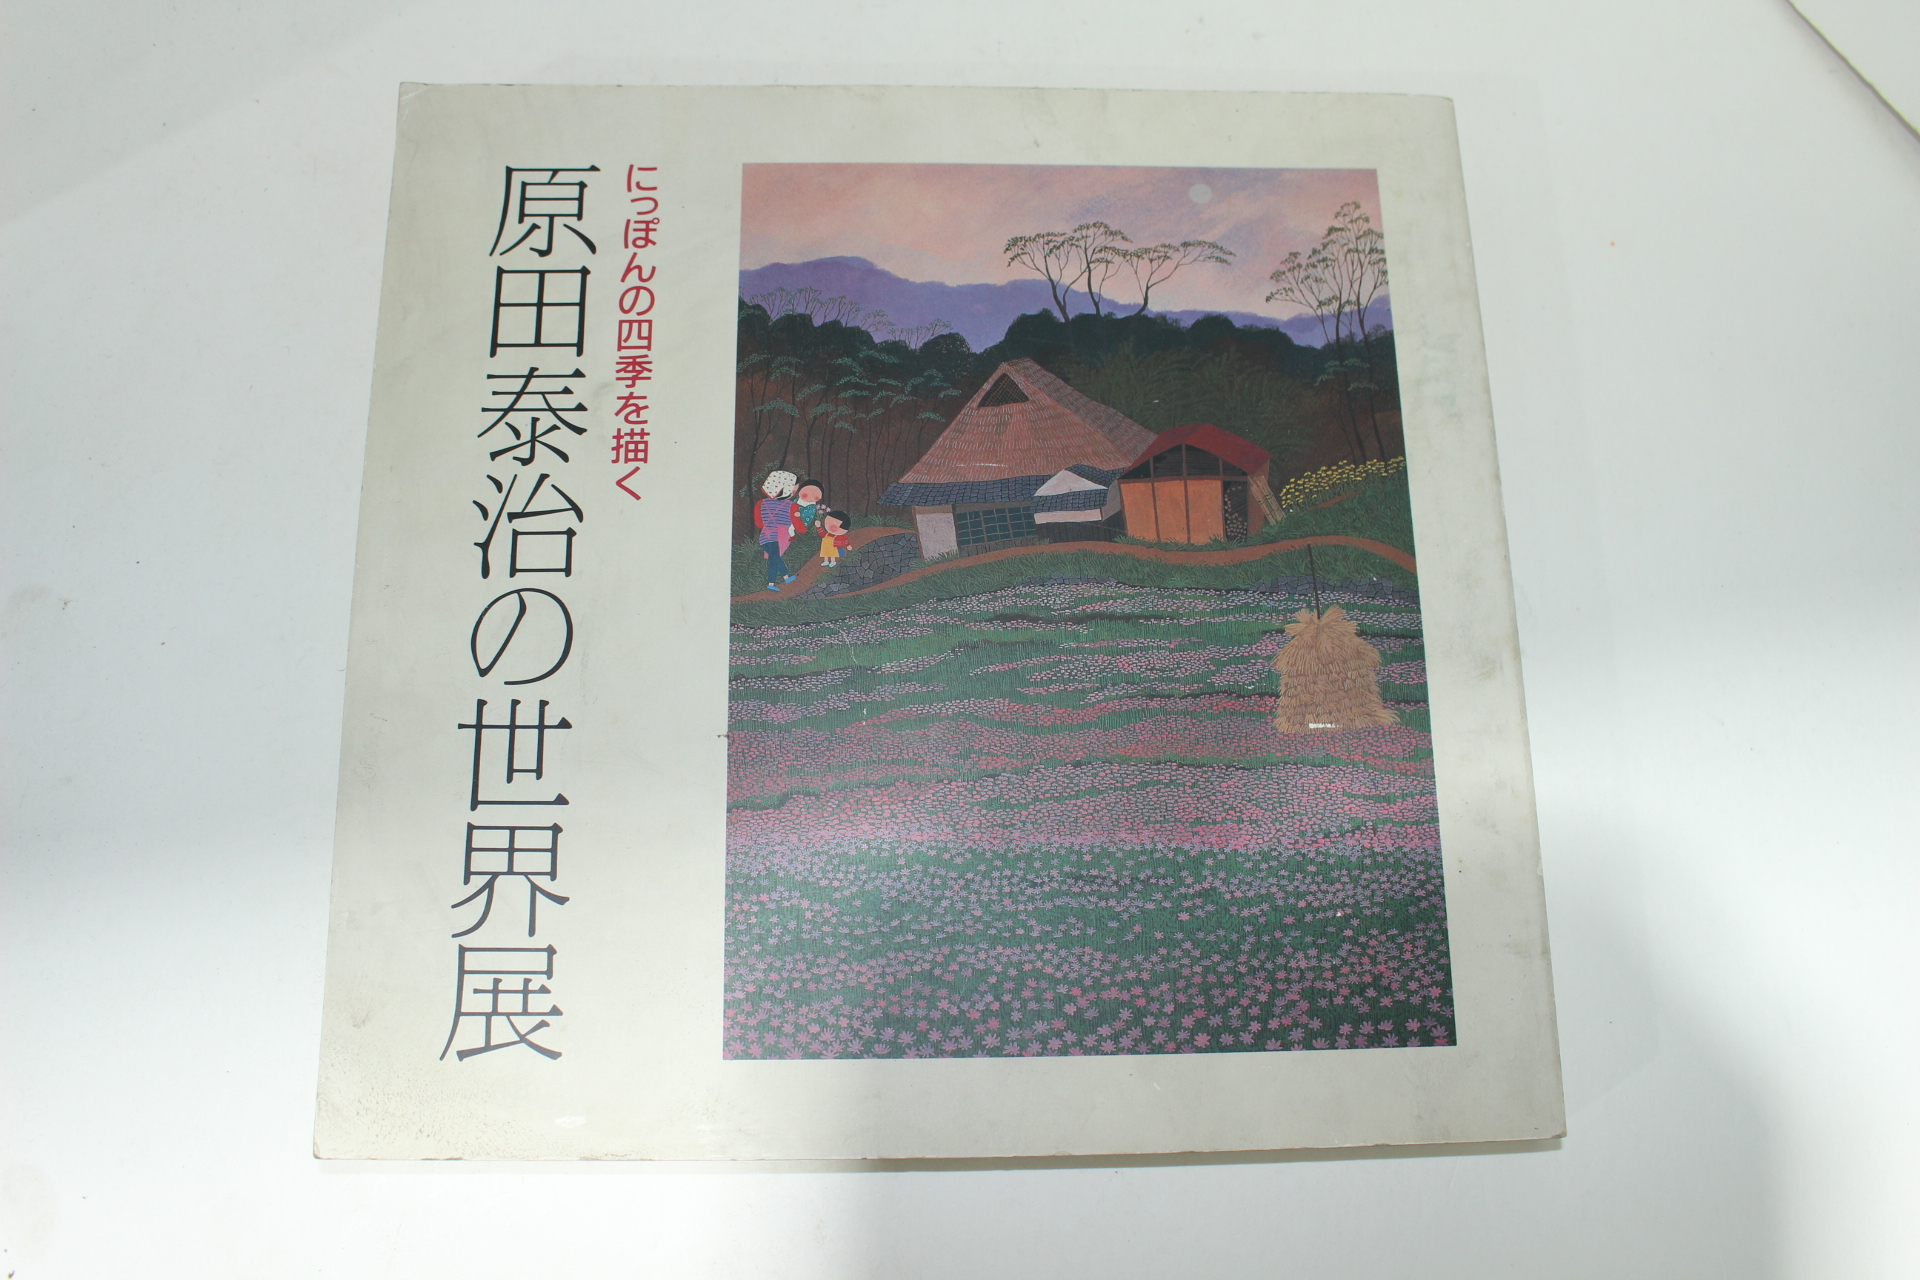 1984년 일본간행 原田泰治 세계전 도록